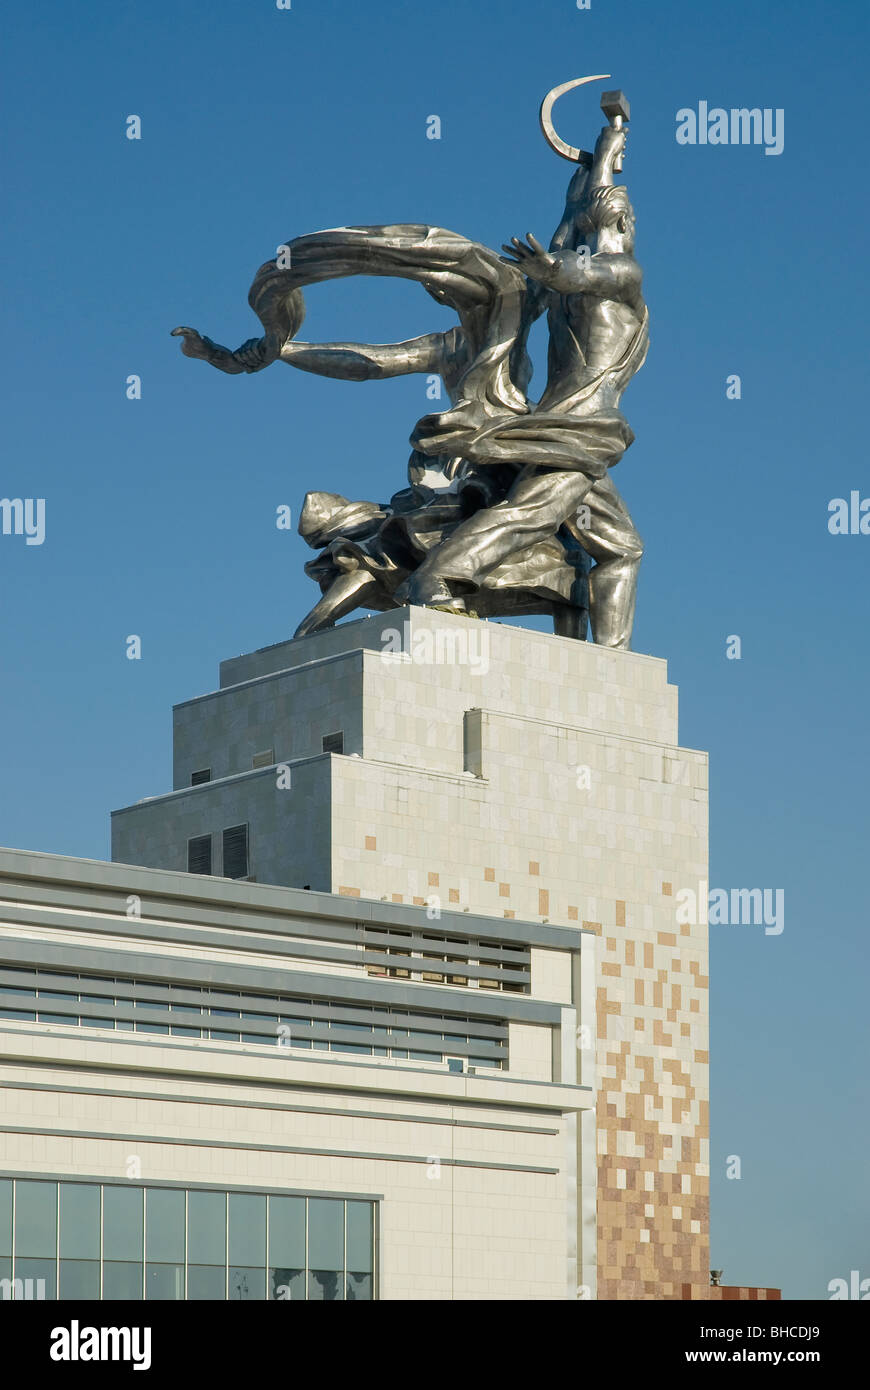 Denkmal für Arbeiter und Bäuerin des sowjetischen Bildhauers Vera Muhina. Gegründet 1937 und im Jahr 2009 restauriert. Moskau, Russland Stockfoto